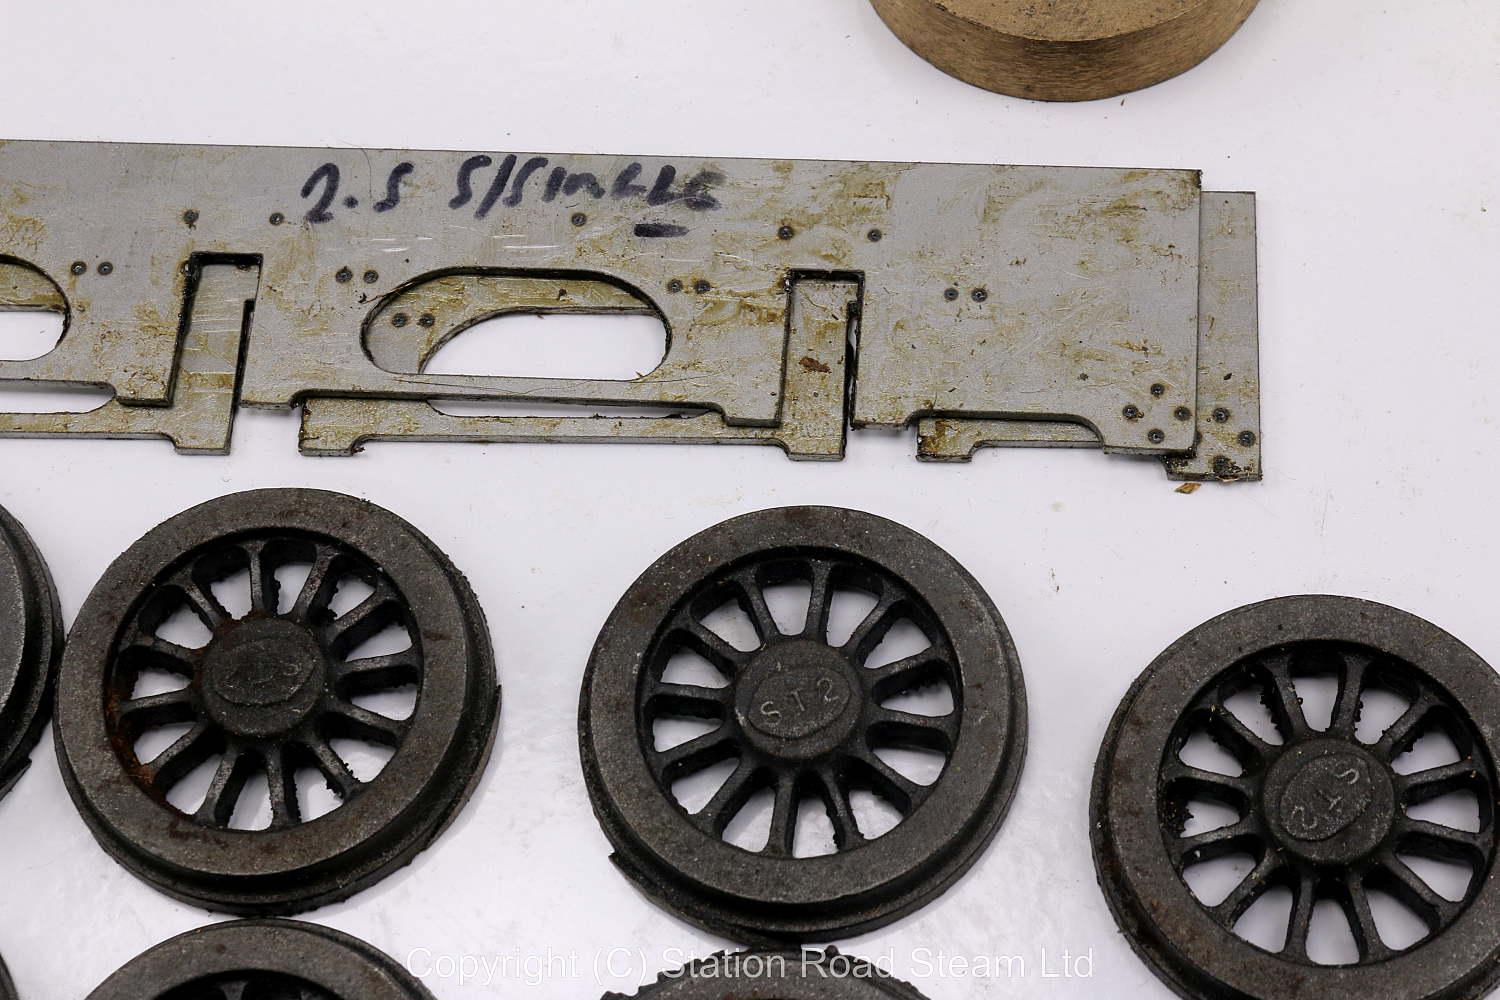 2 1/2 inch gauge Stirling single